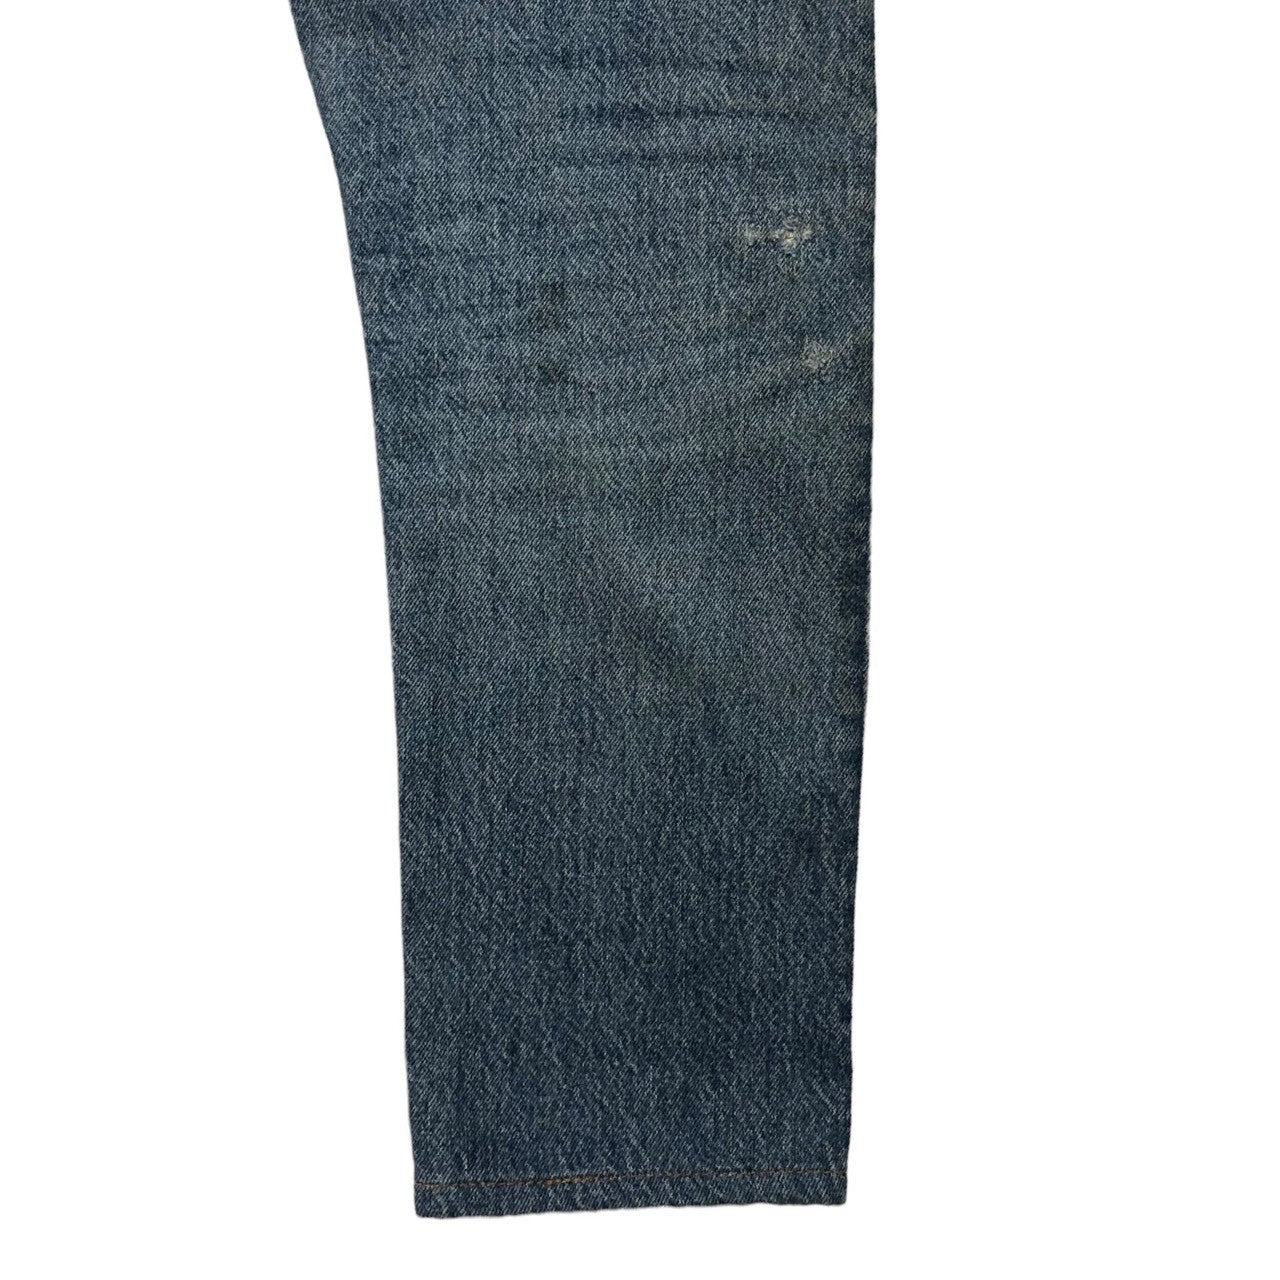 Levi's(リーバイス) 80’s 505 Reconstructed vintage denim pants 再構築 デニム パンツ ジーンズ W27 インディゴ 80年代 501 42 TALON 524